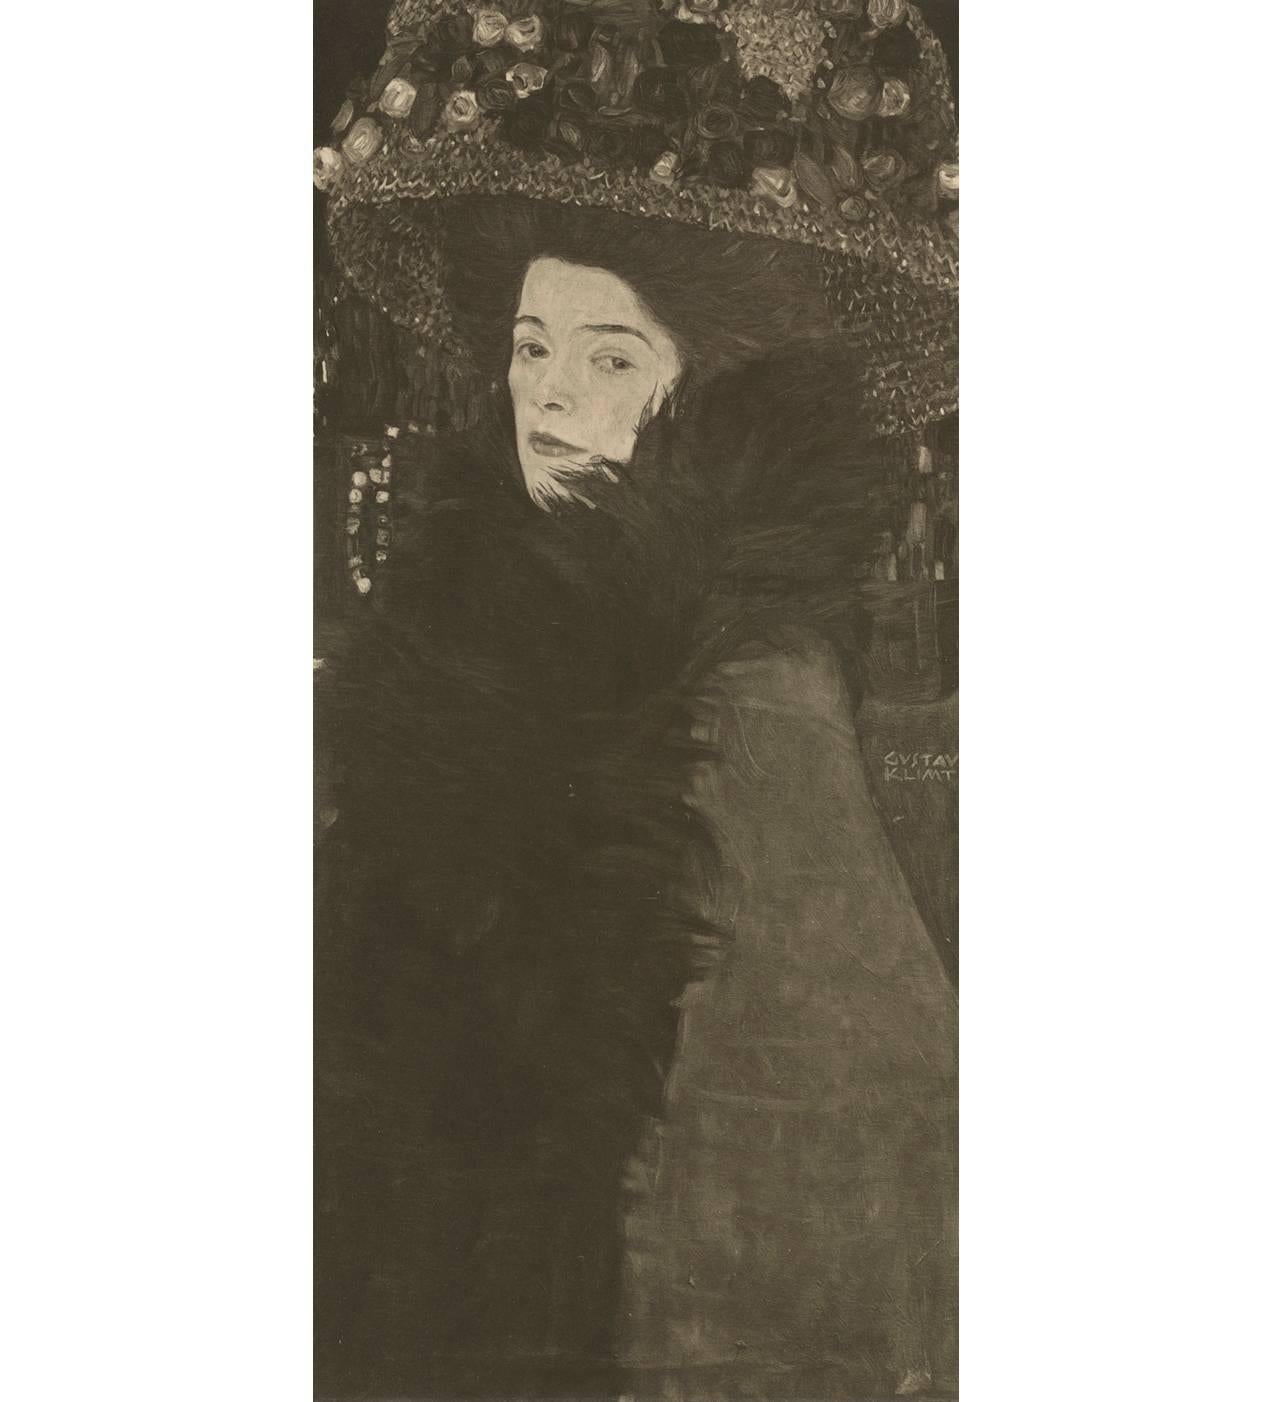 Max Eisler Eine Nachlese folio « Lady in a Feathered Hat » collotype - Print de (after) Gustav Klimt